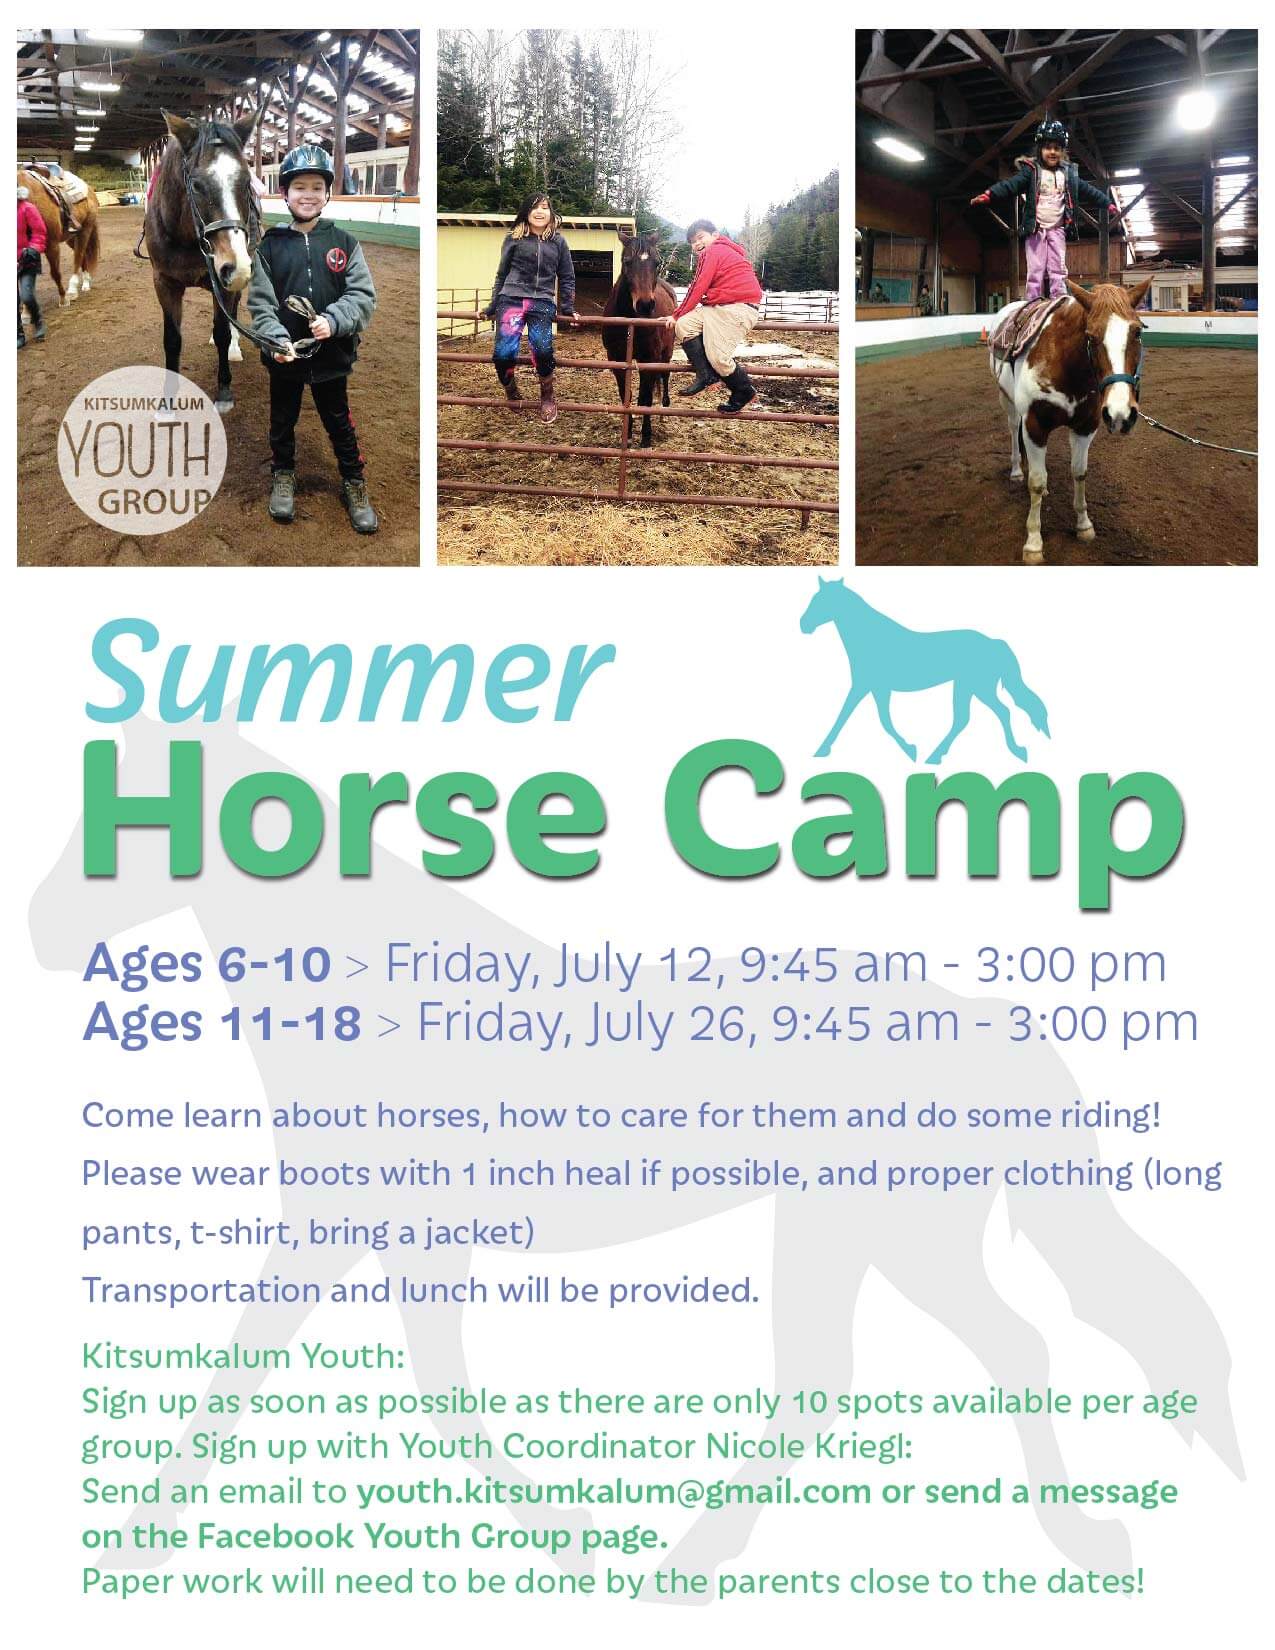 Kitsumkalum Youth Group Summer Horse Camp